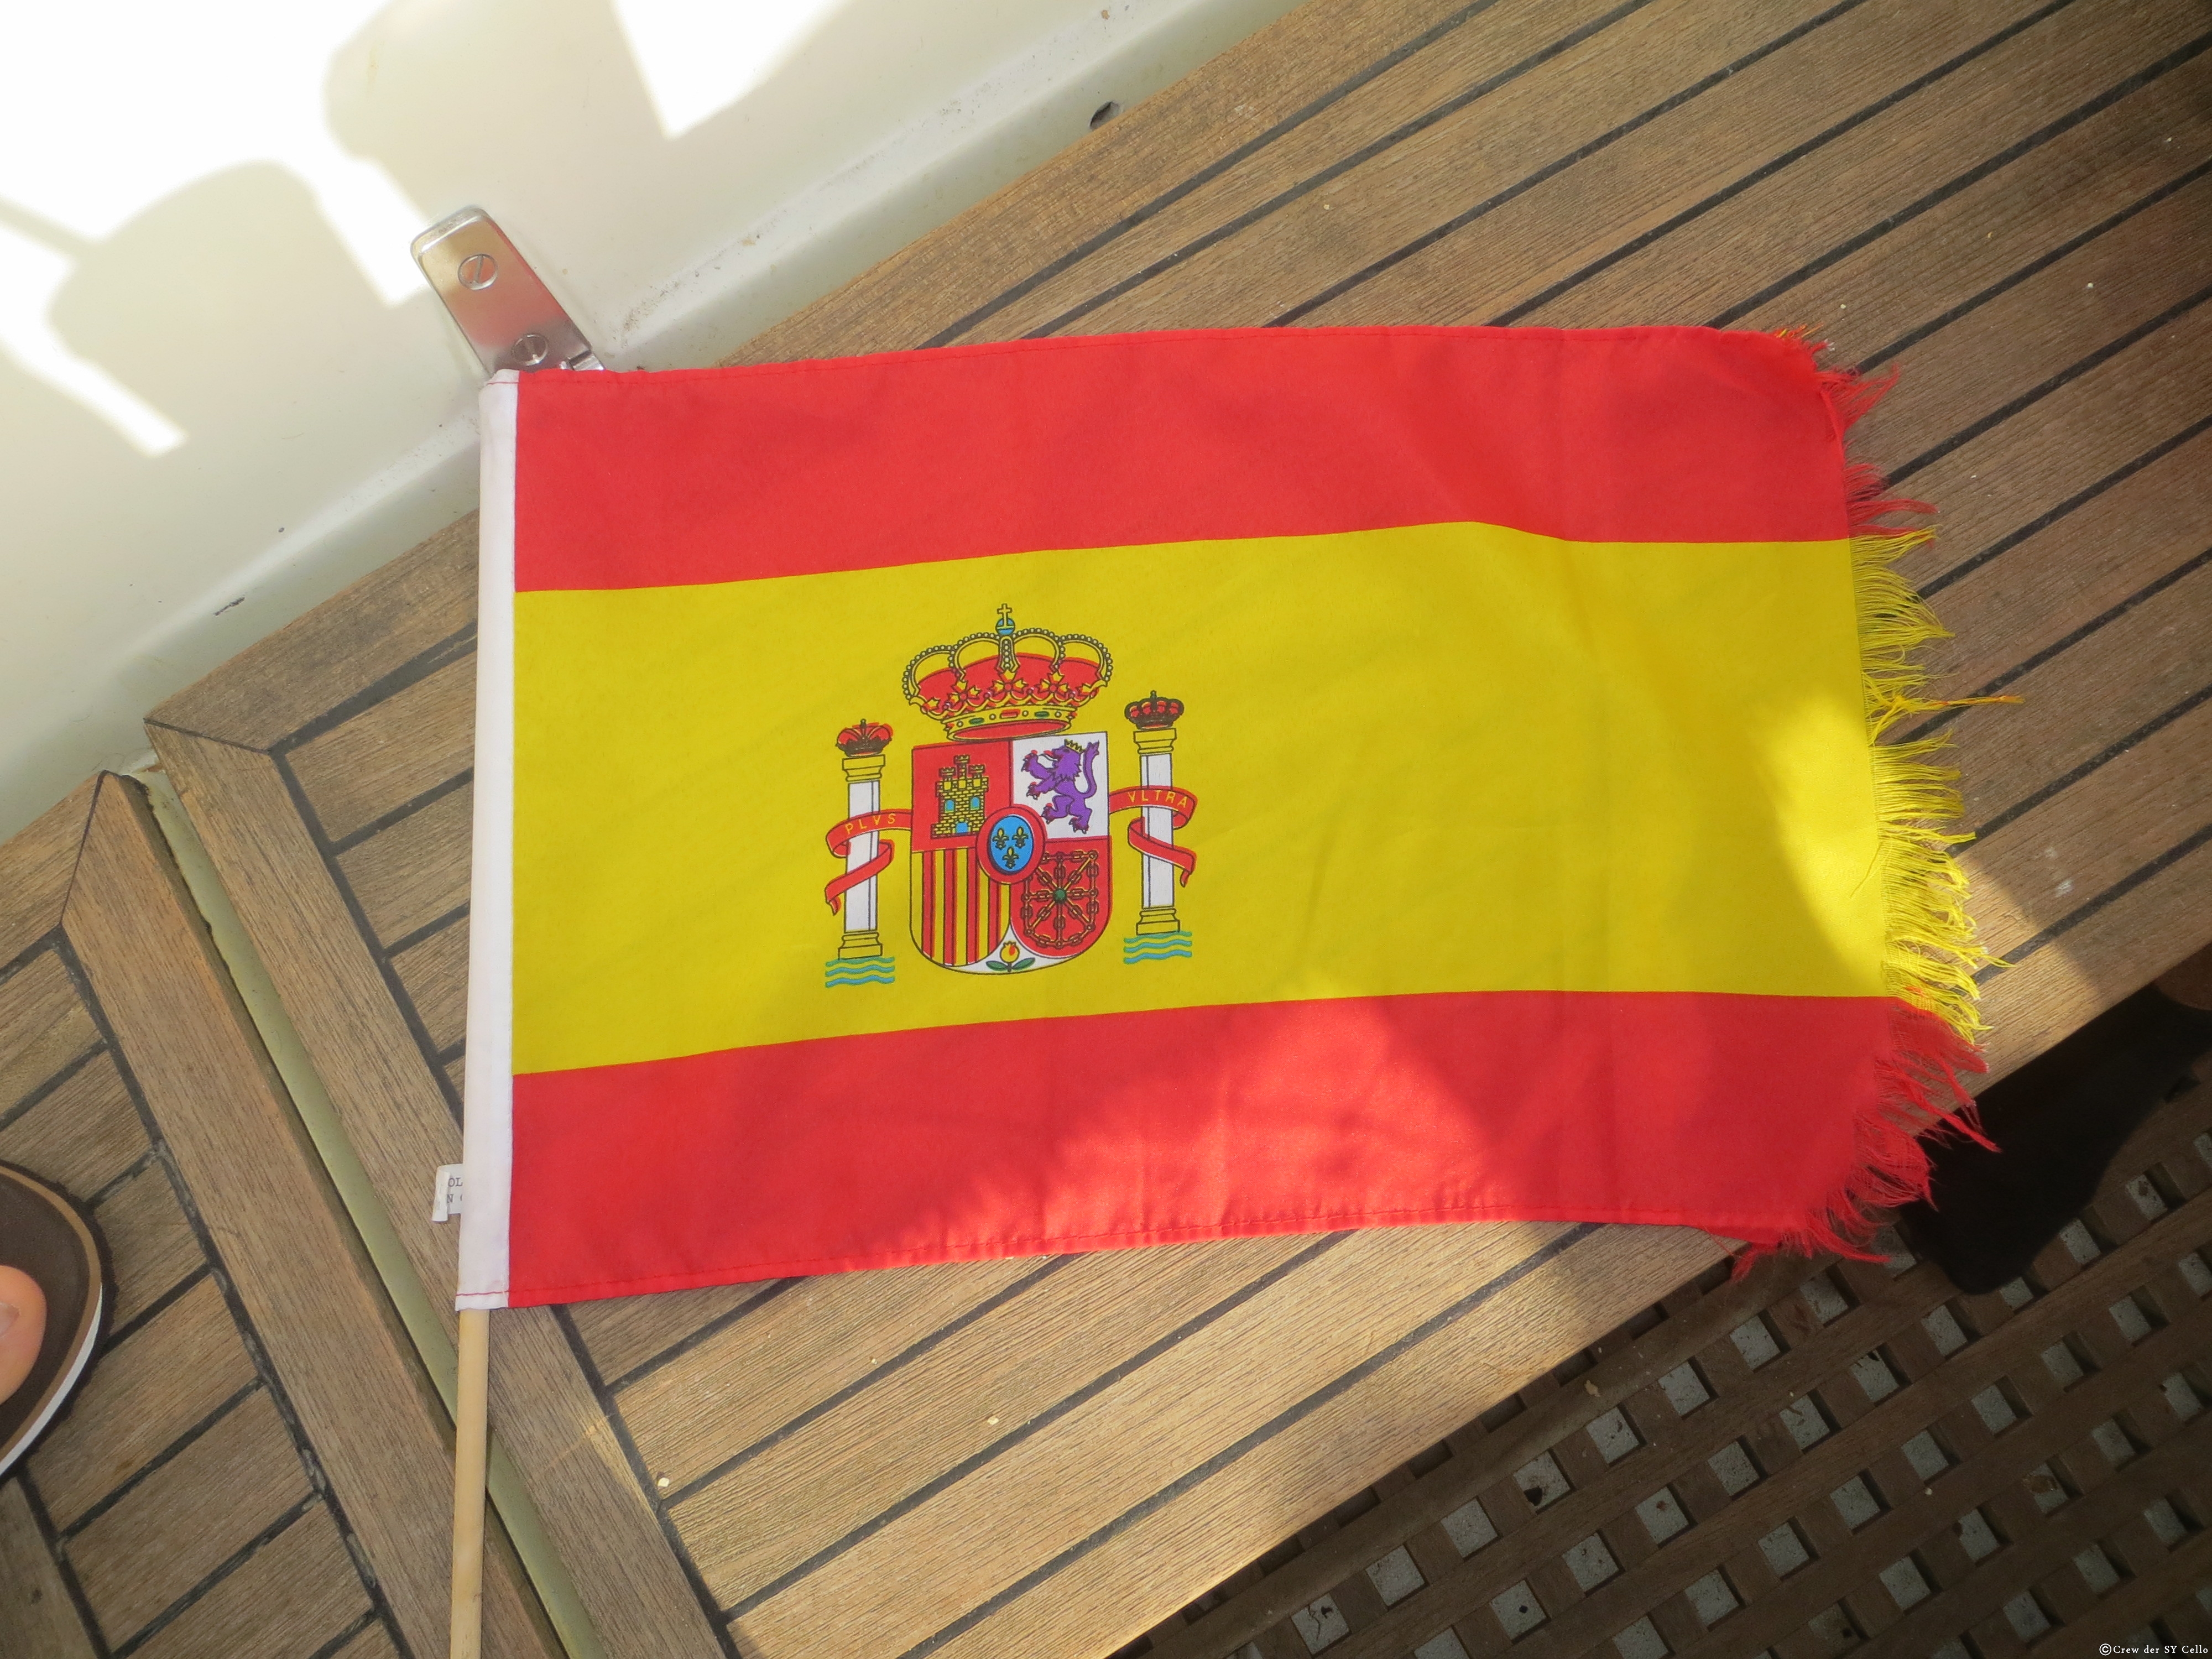 Unsere Spanische Gastflagge sieht ziemlich mitgenommen aus